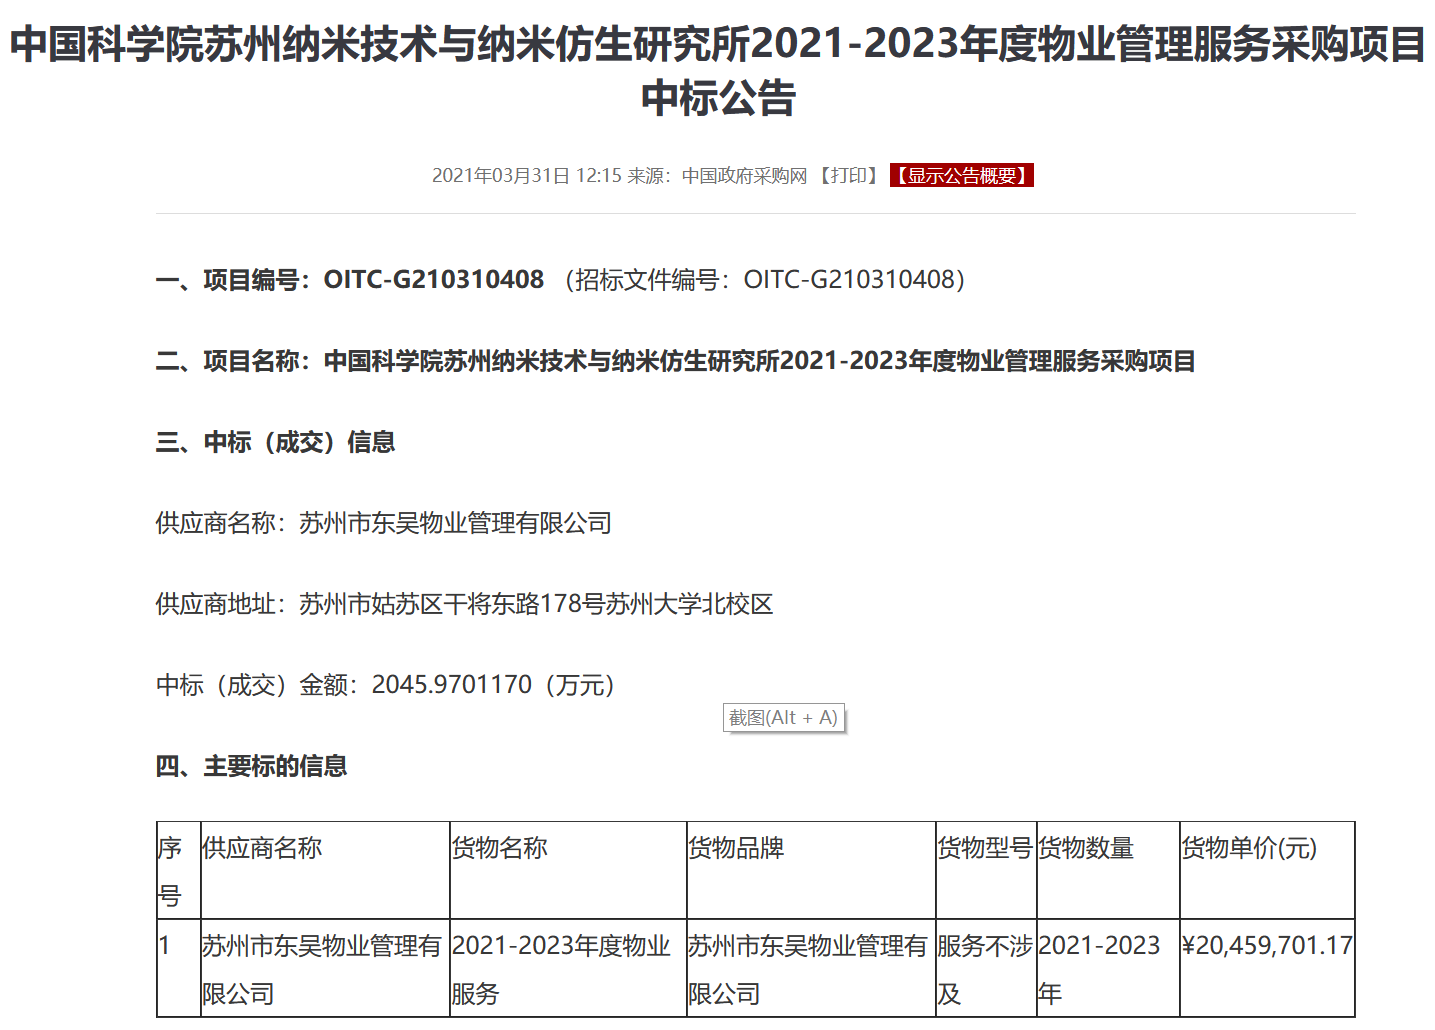 蘇州東吳物業中標中科院蘇州奈米所2021-2023年度物業管理服務採購項目-中國網地産